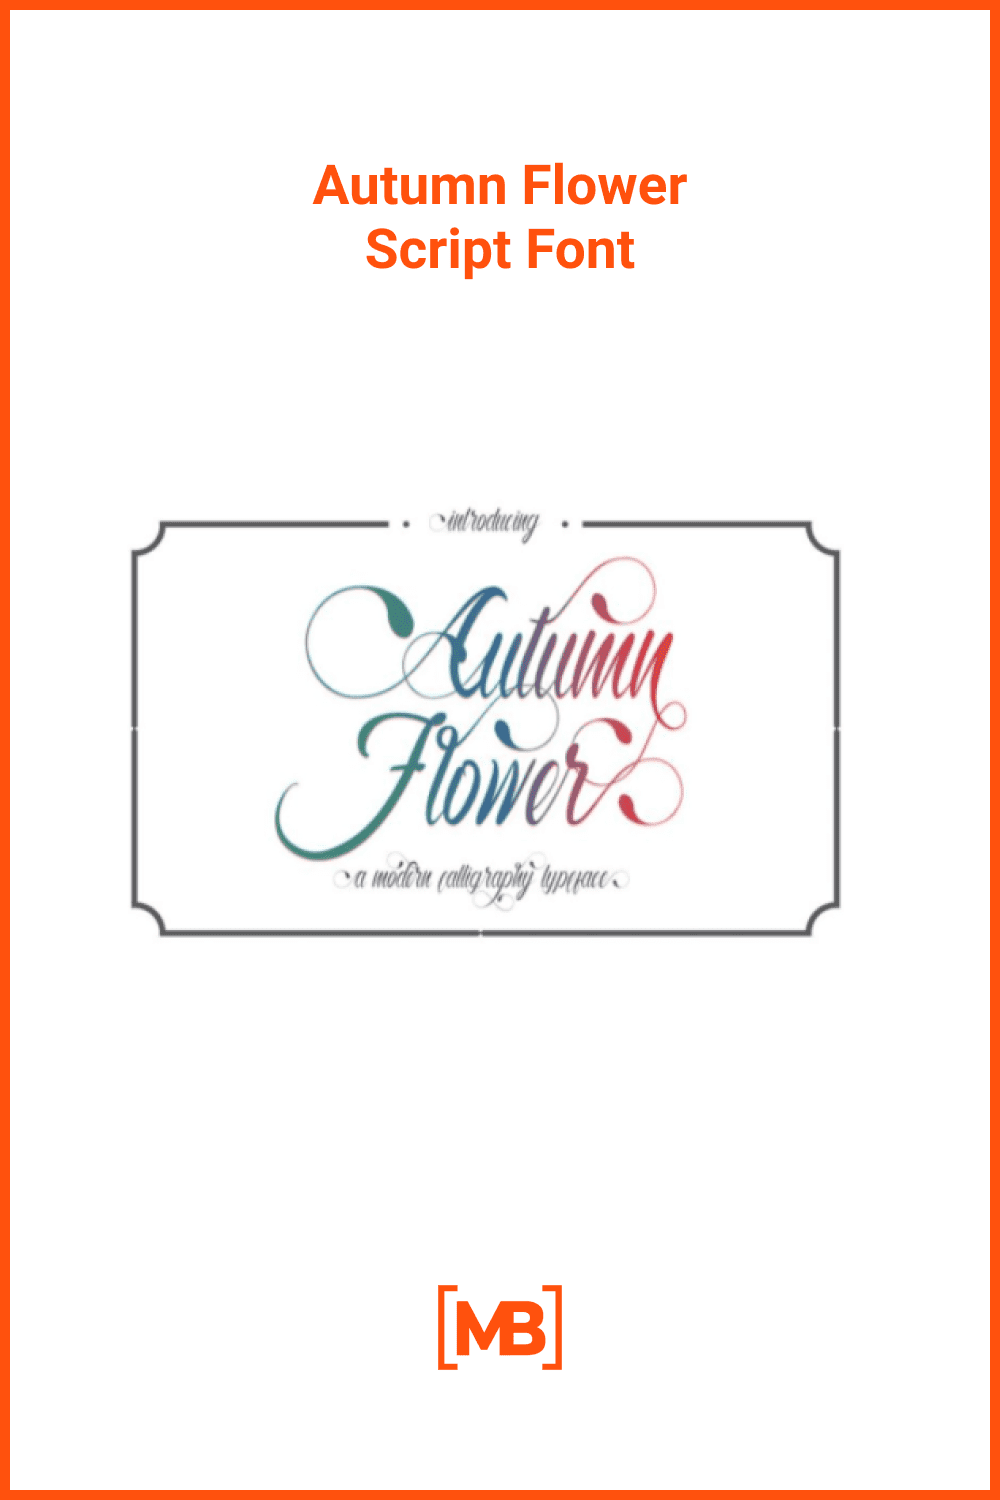 Autumn Flower Script Font.